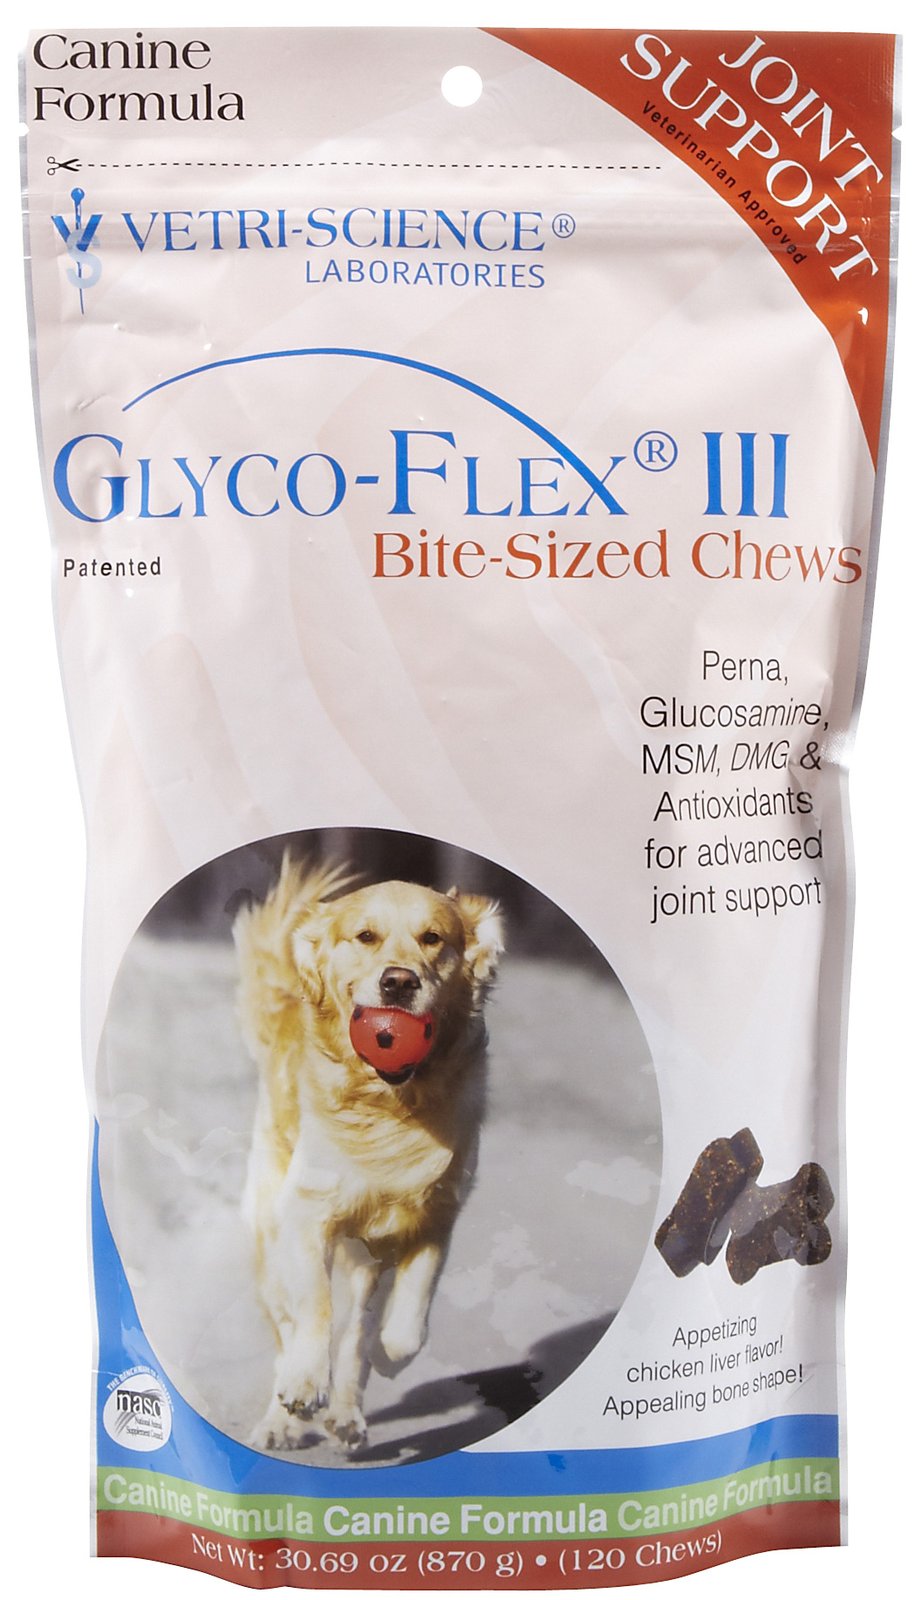 Glyco-Flex III Bite-Sized Chews, 120 Soft Chews